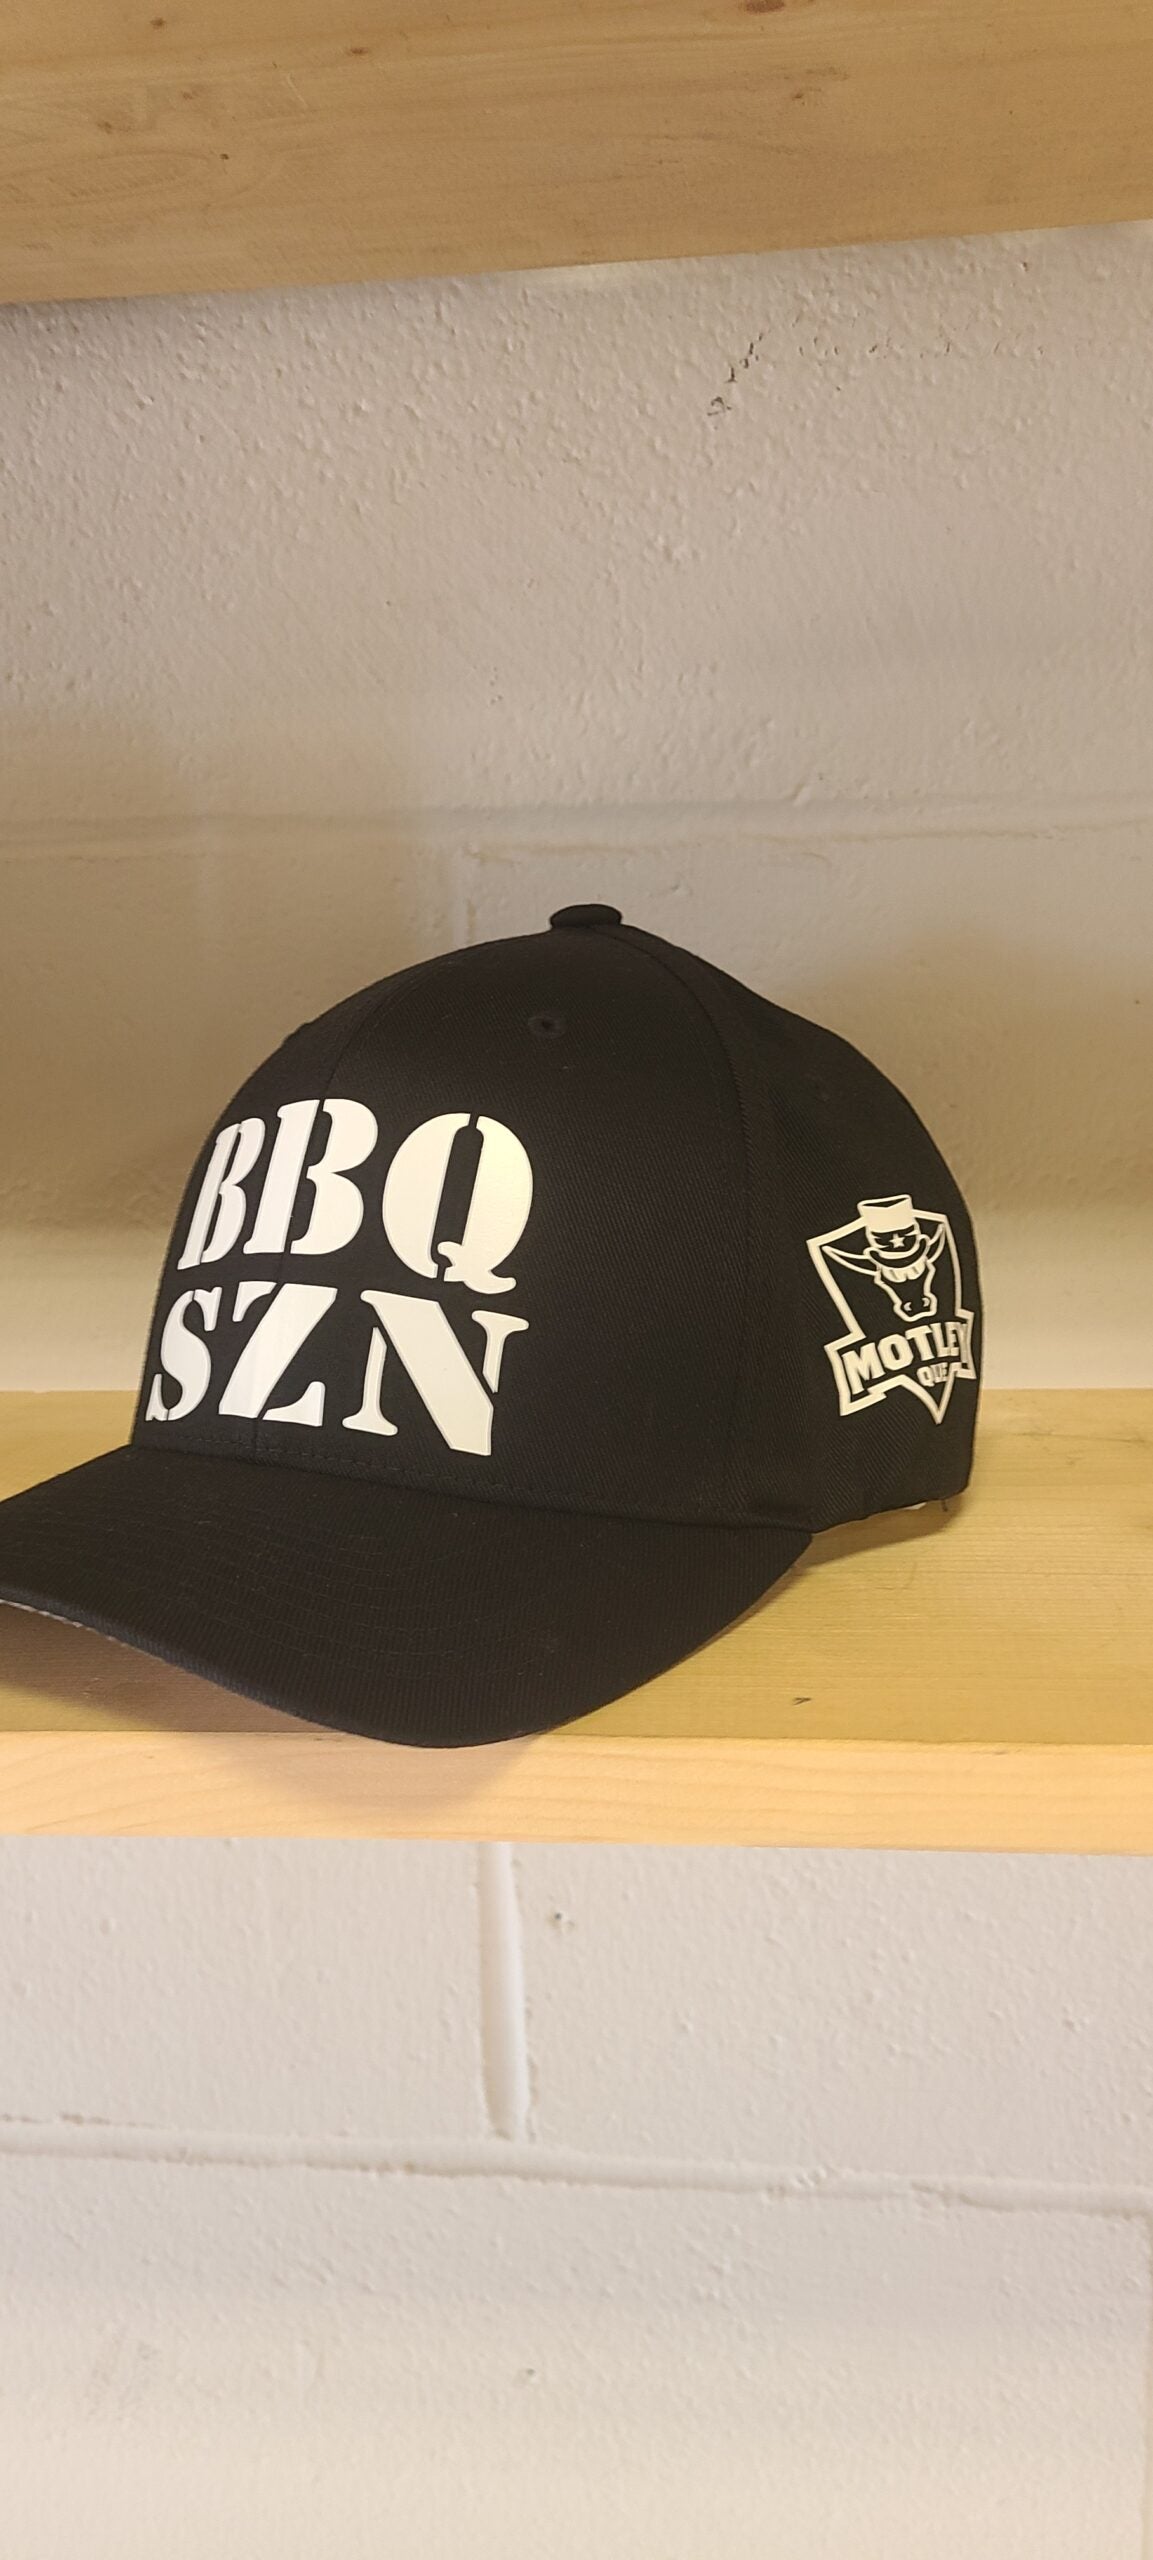 MQ BBQ SZN Black Flex fit Hat L/XL